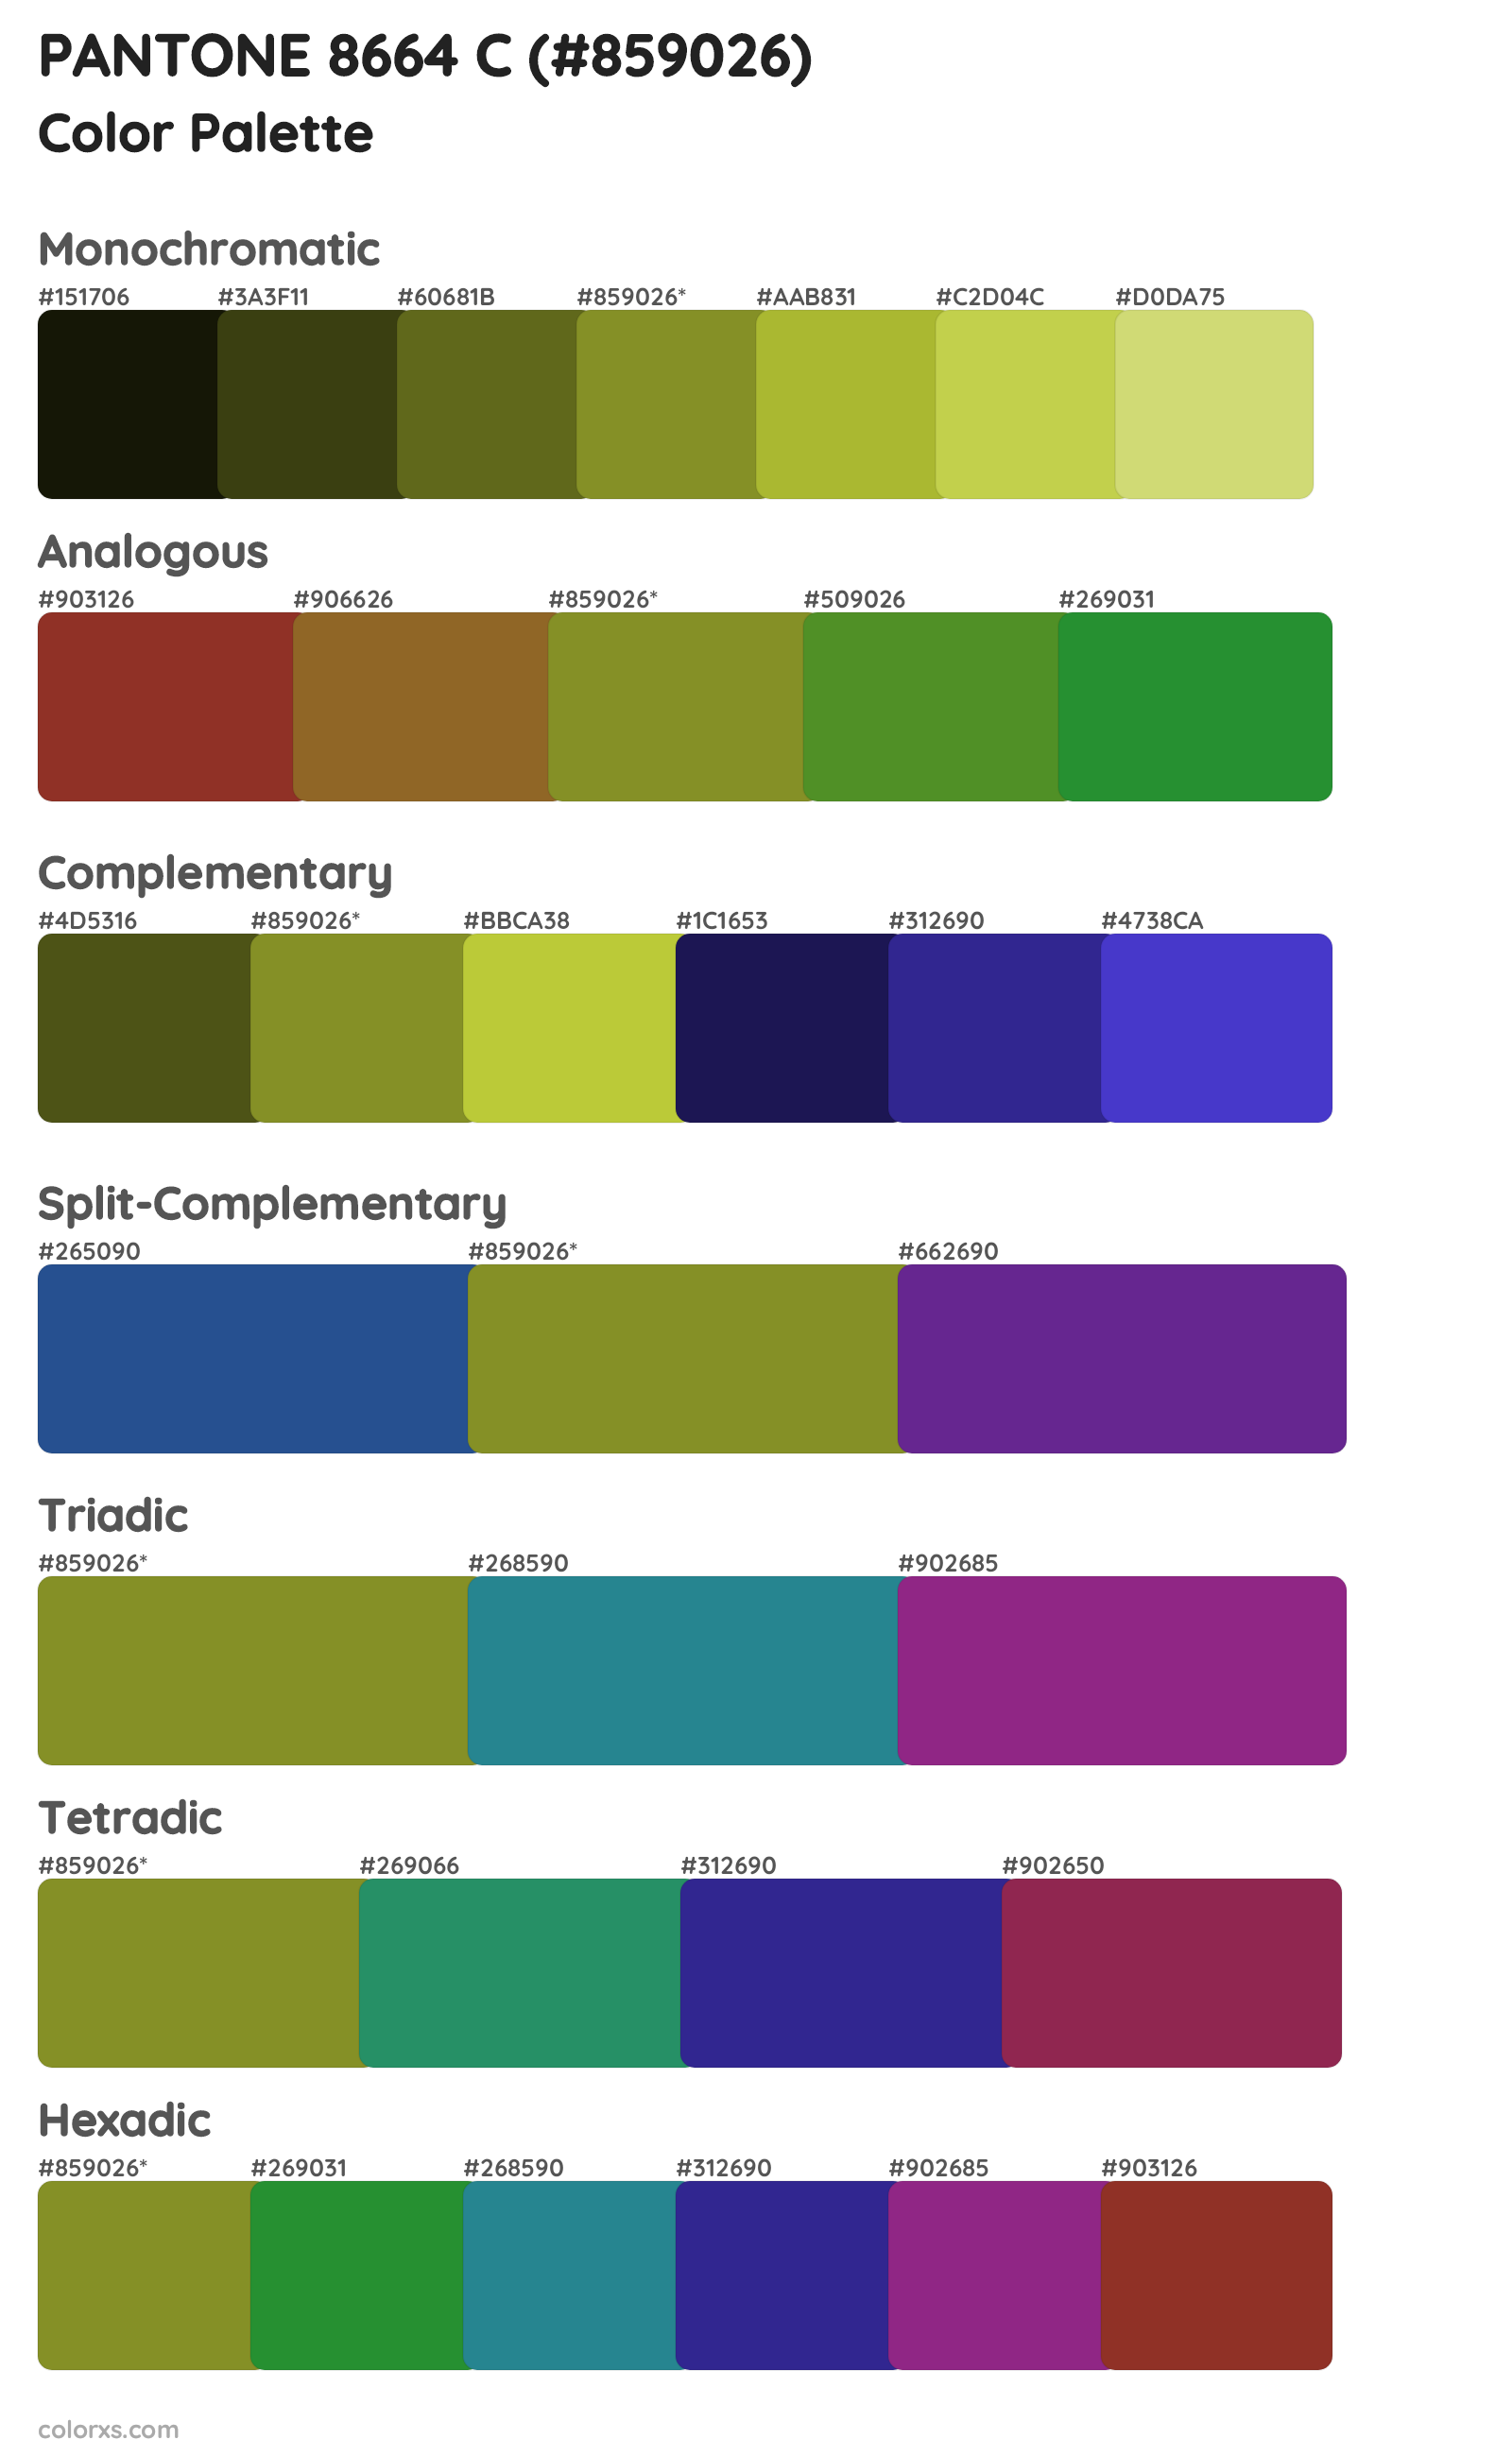 PANTONE 8664 C Color Scheme Palettes